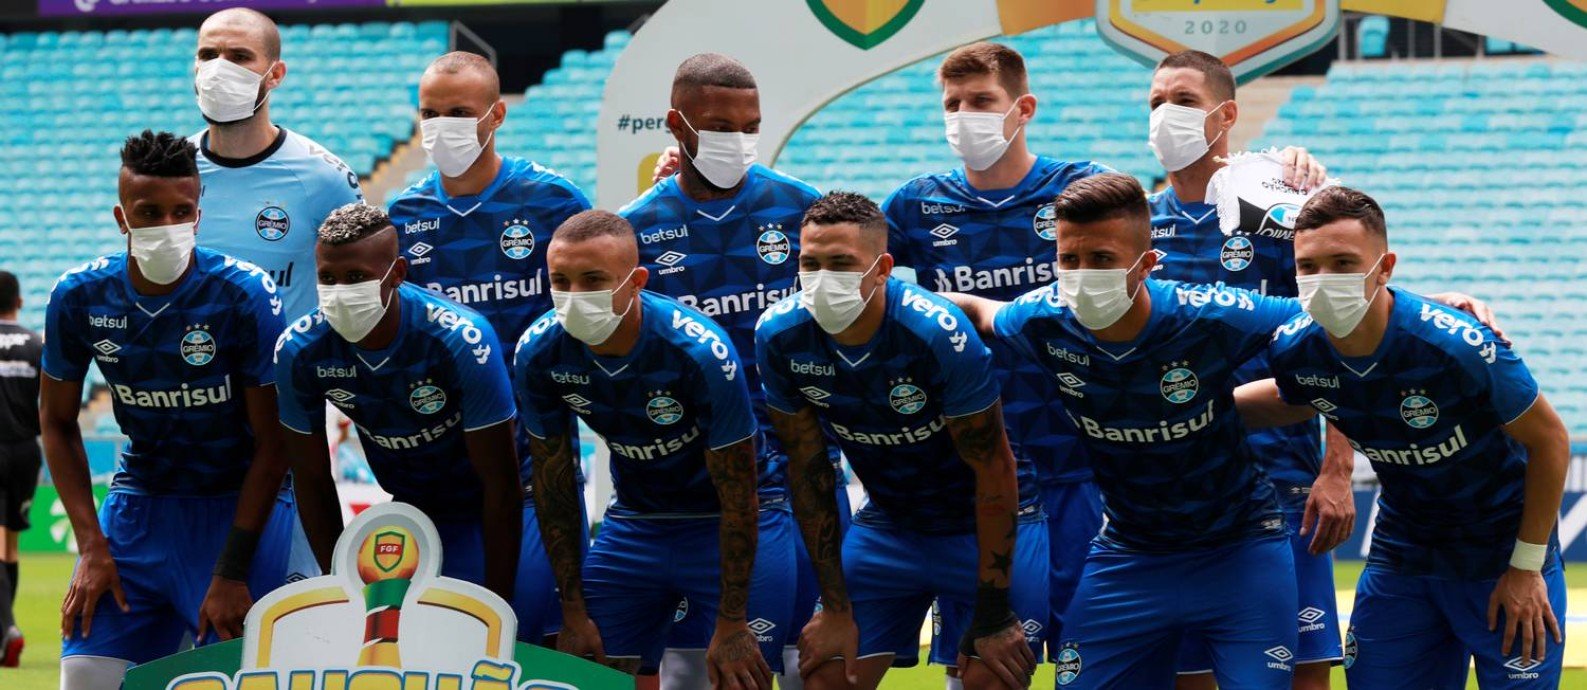 Quais foram os efeitos da pandemia no futebol mundial?